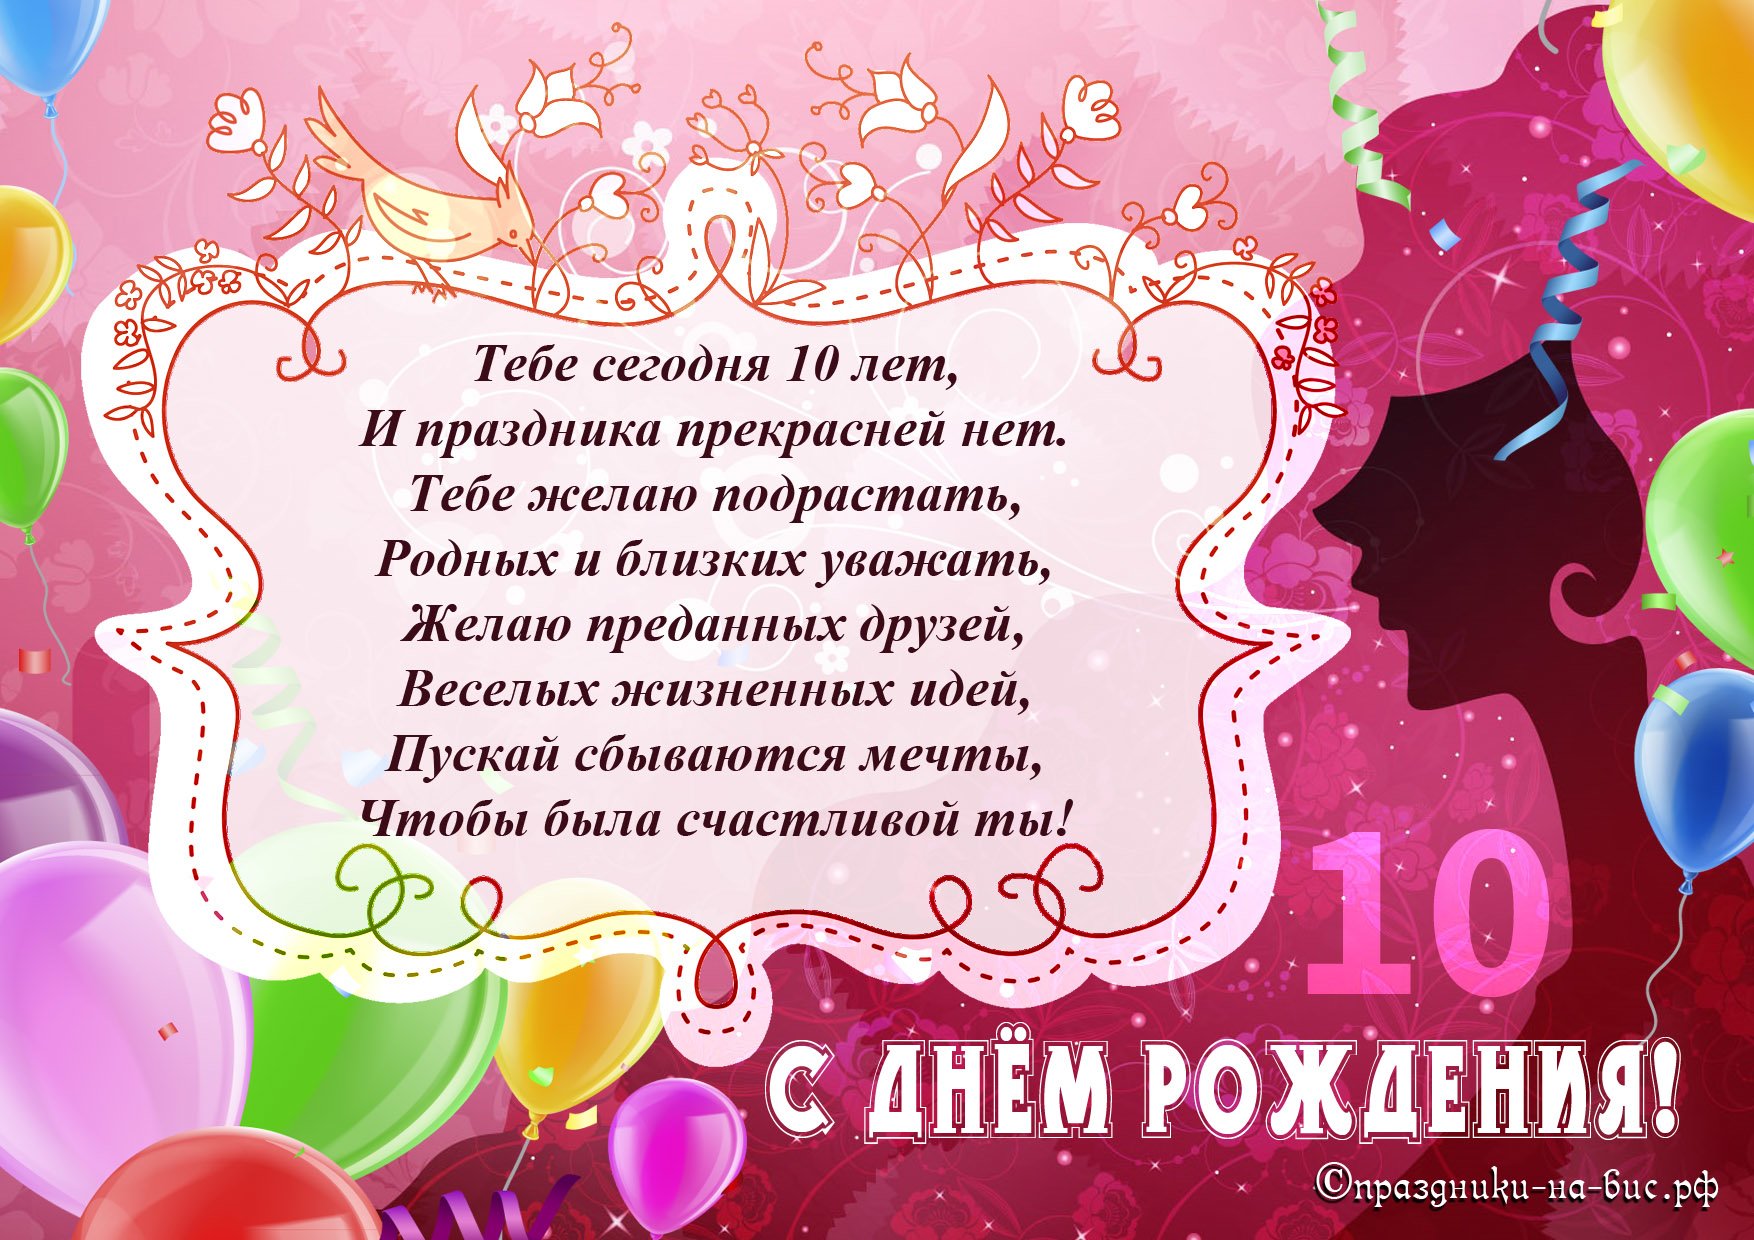 Поздравление С Днем Дочери На Украинском